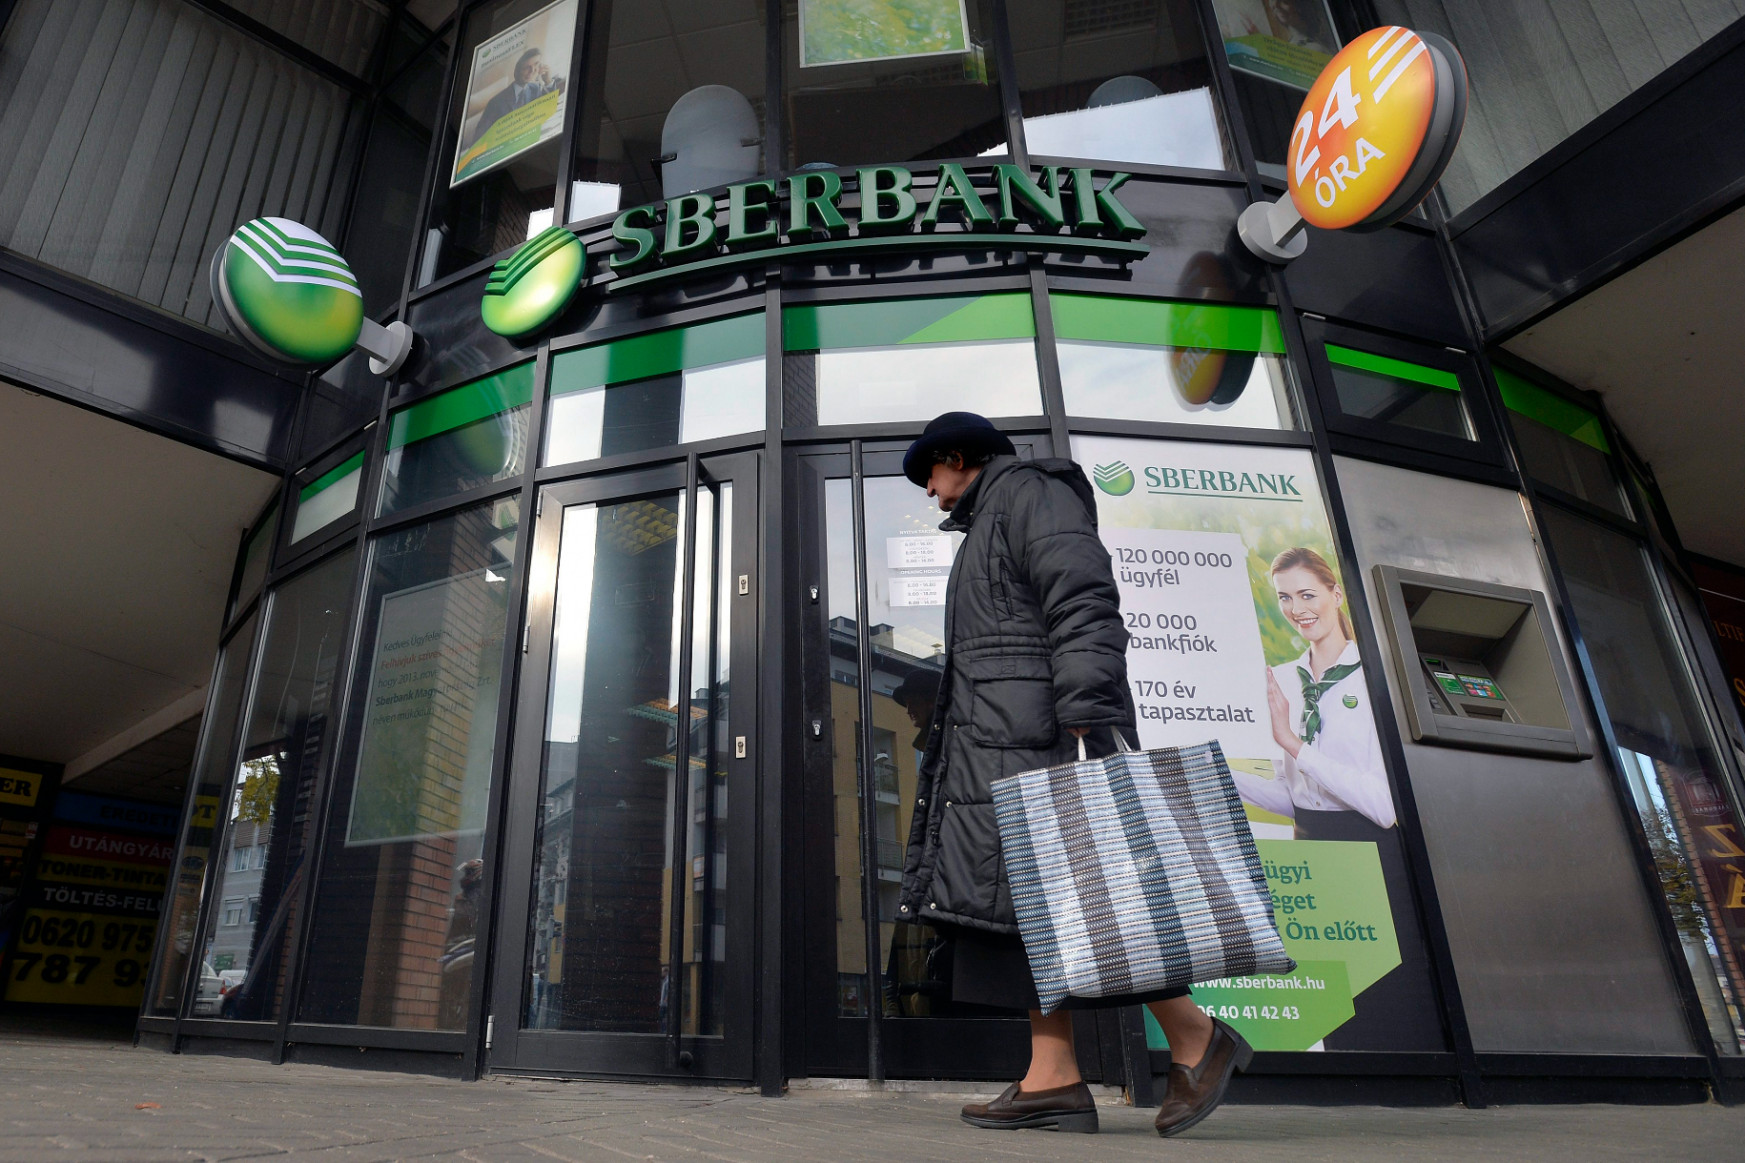 Mit tegyen most az, aki szerencsétlenségére éppen a Sberbank ügyfele volt?